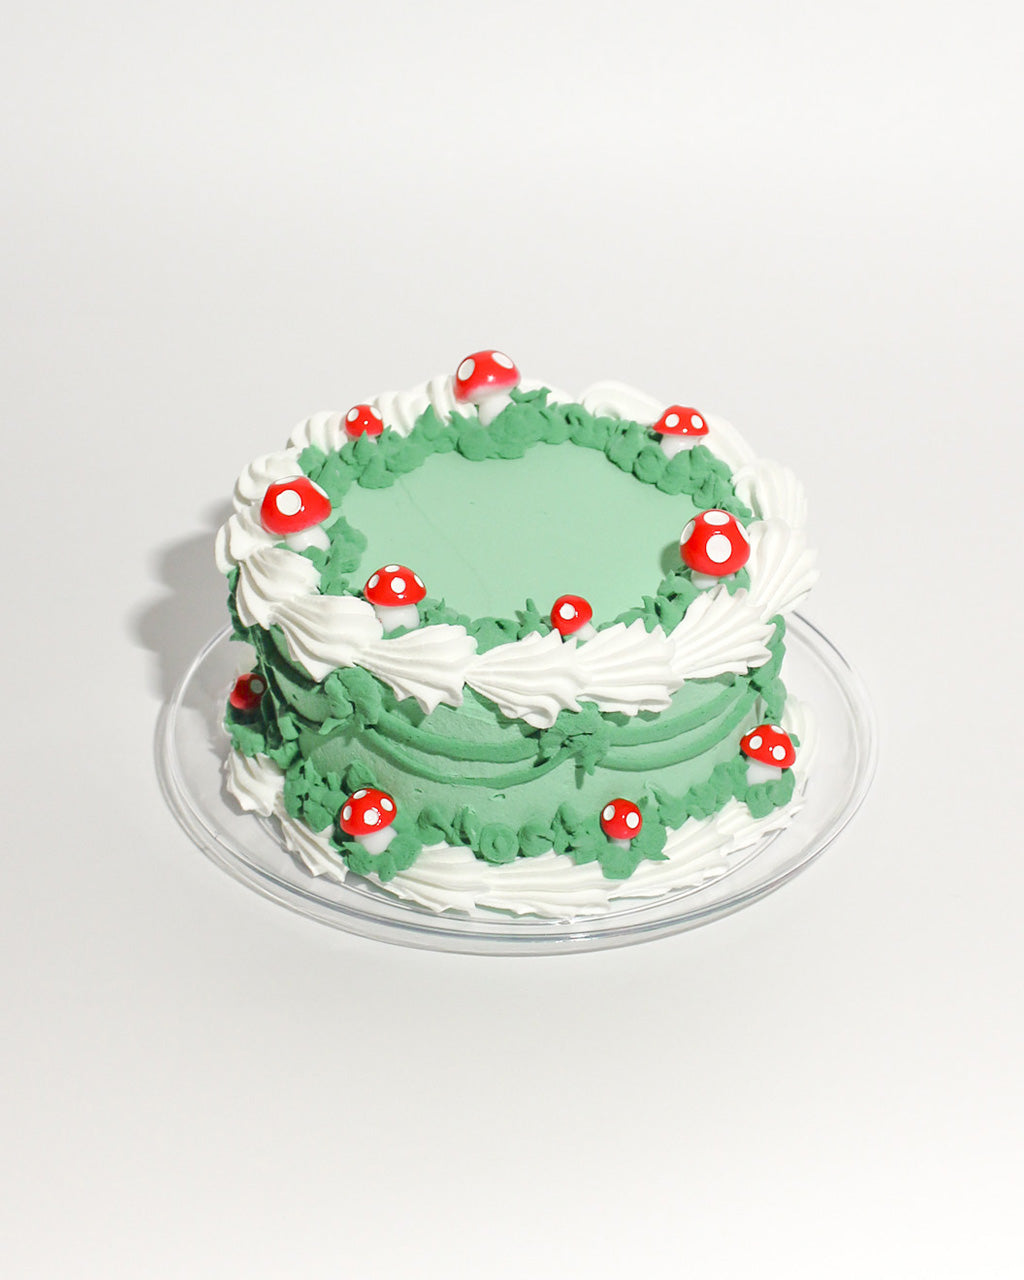 Fake Cake Craft Kit - Sprinkles